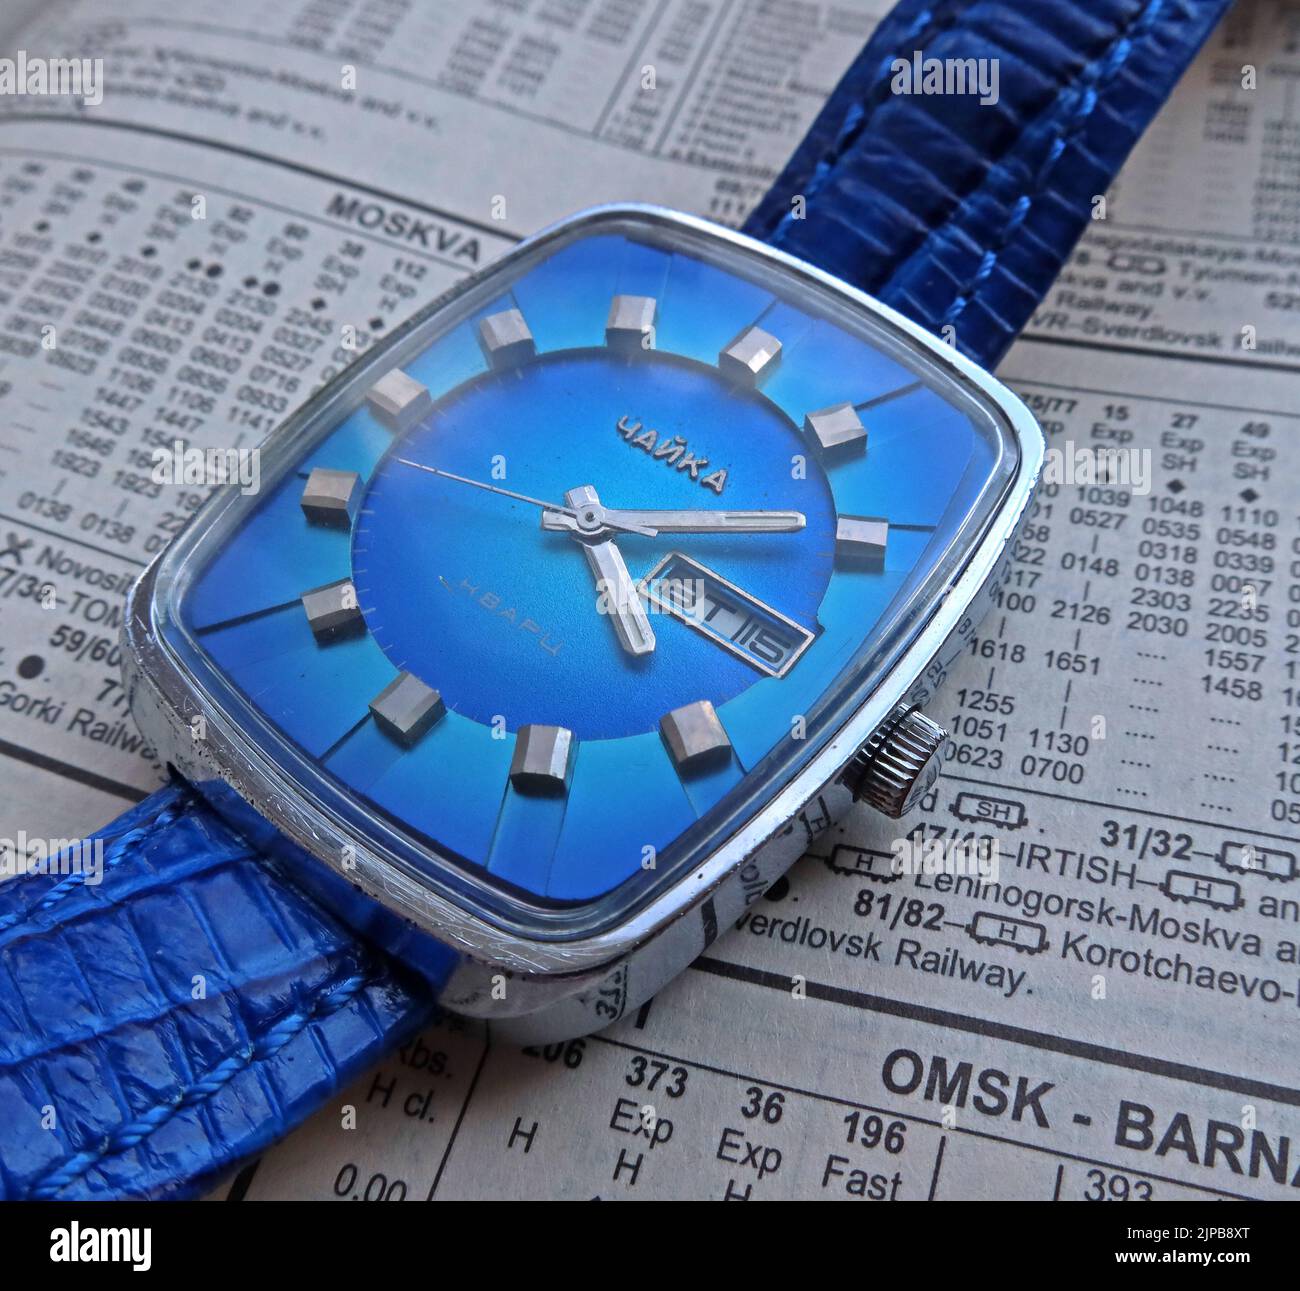 Chaika Blue Quartz meccanico Rezonator 3050 orologio russo, primo orologio al quarzo sovietico commerciale Foto Stock